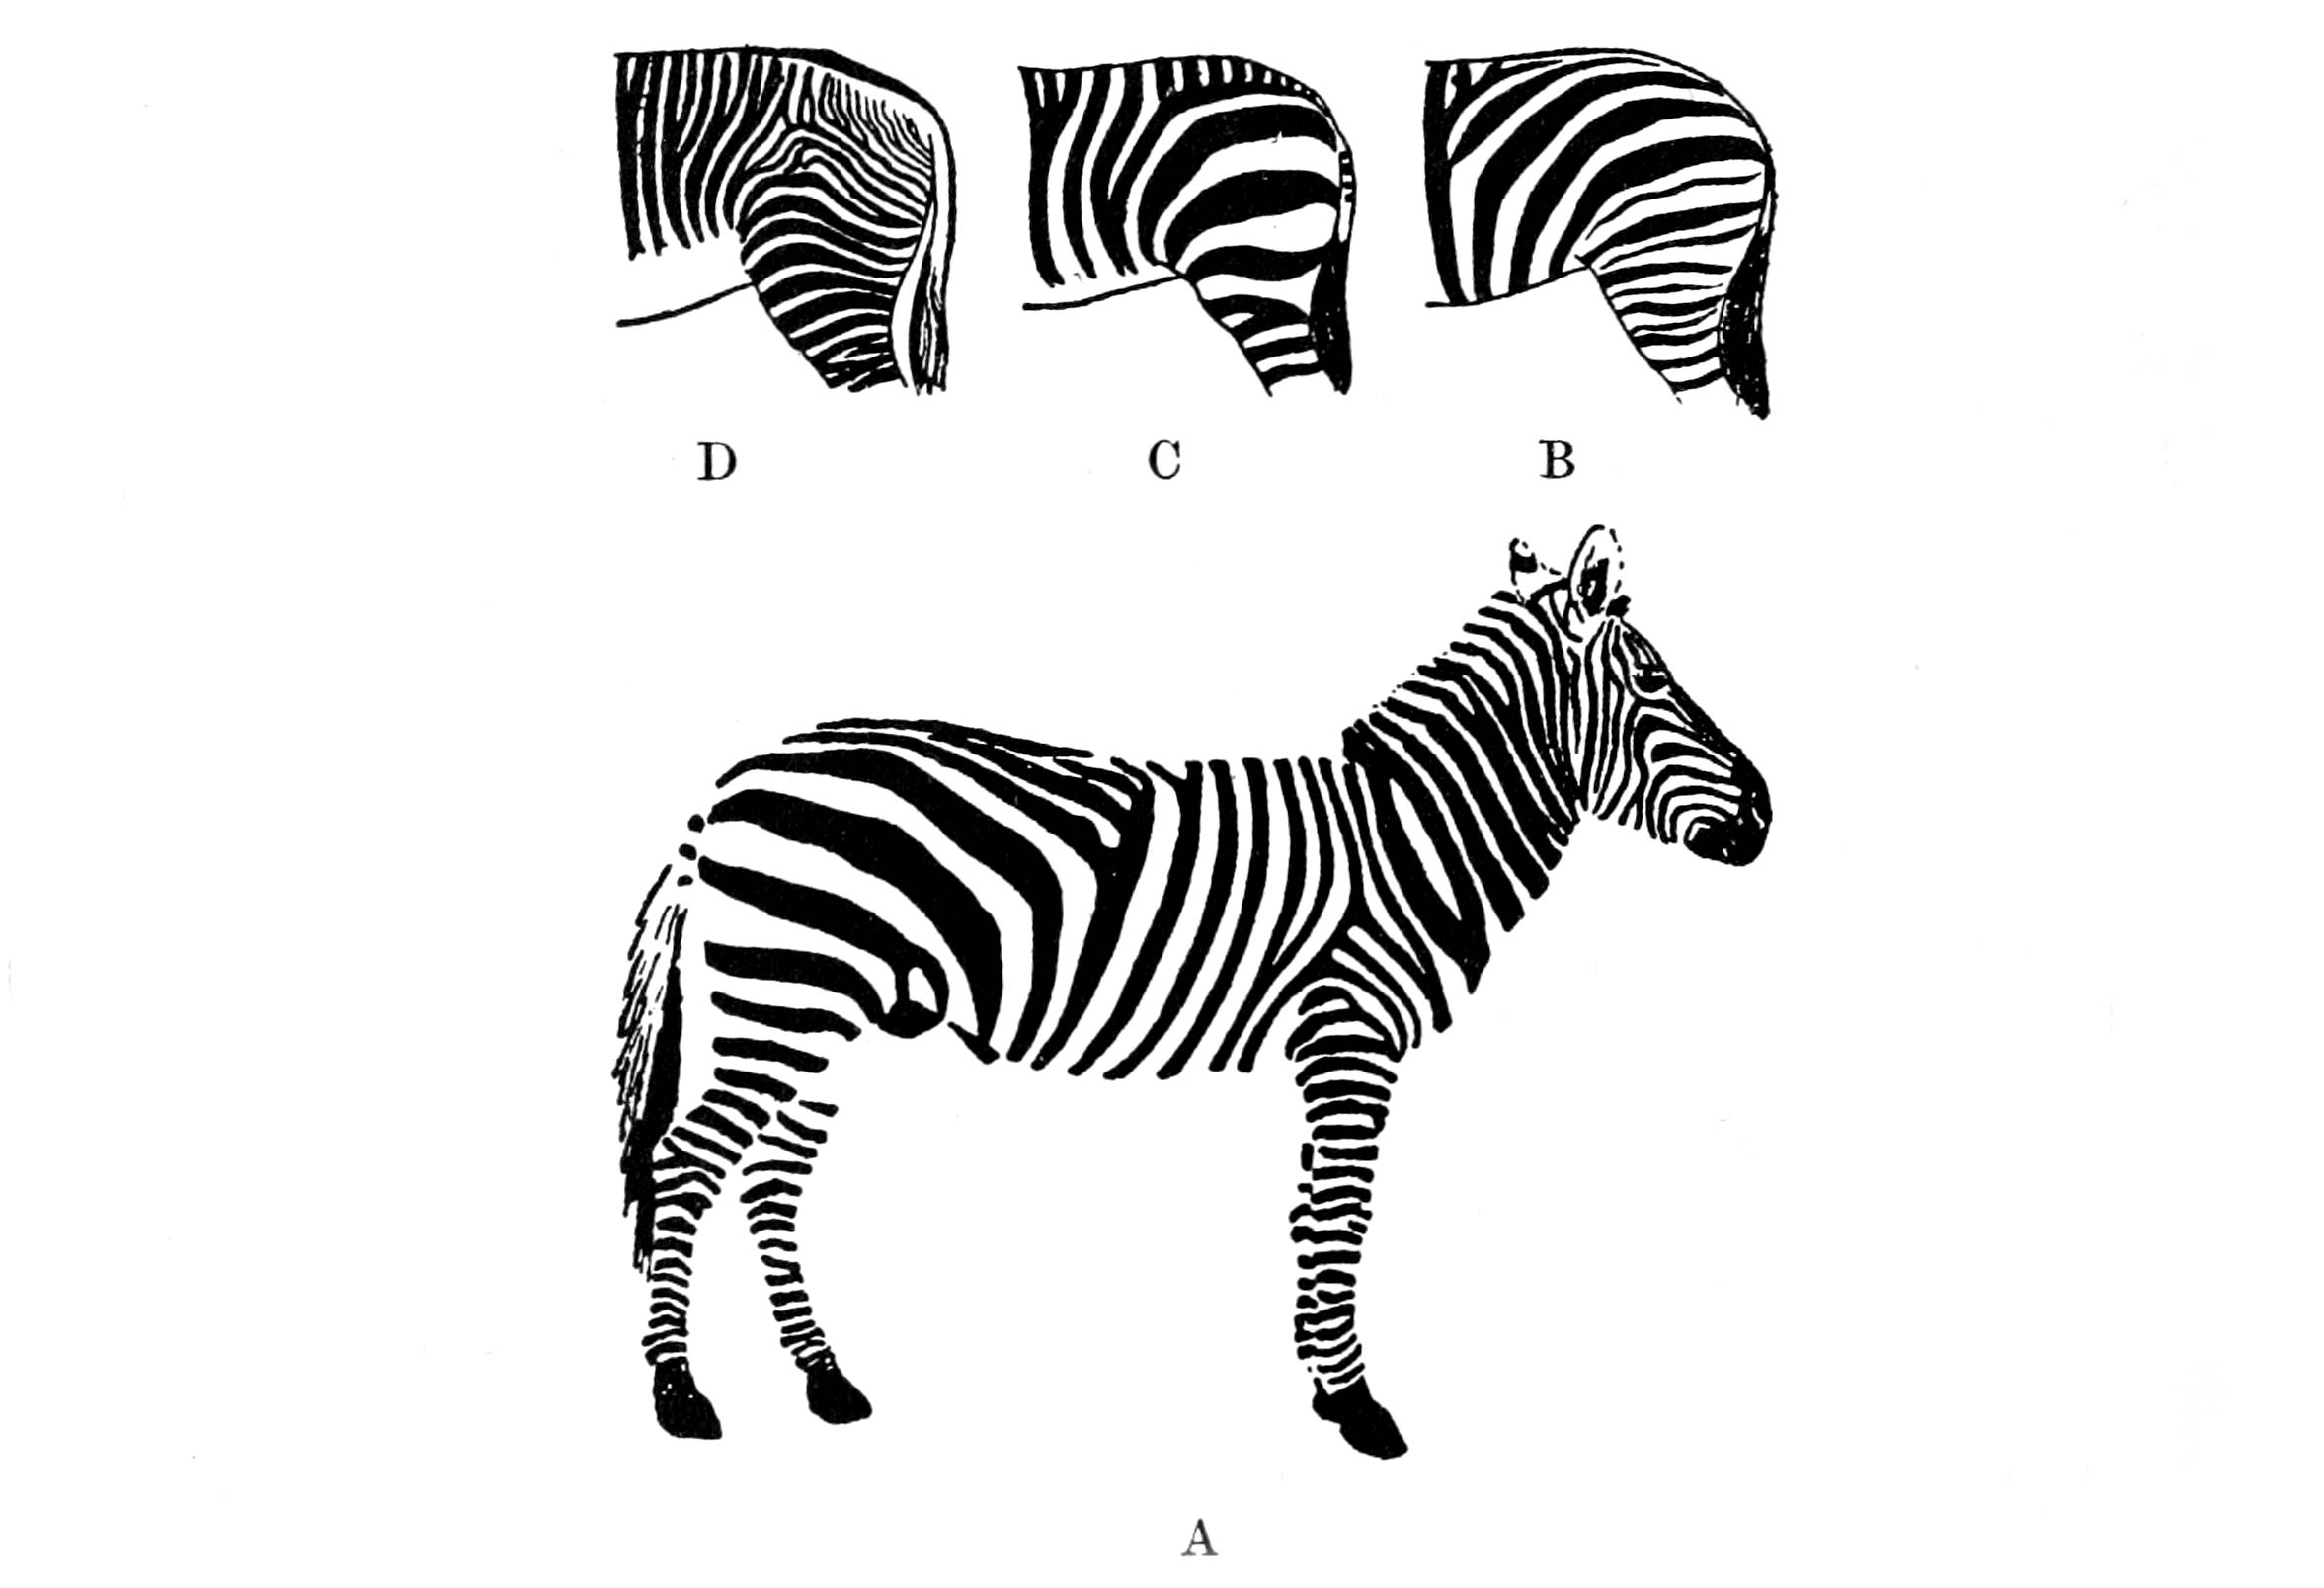 les-rayures-des-zebres-patterns-on-growth-and-form-index-grafik